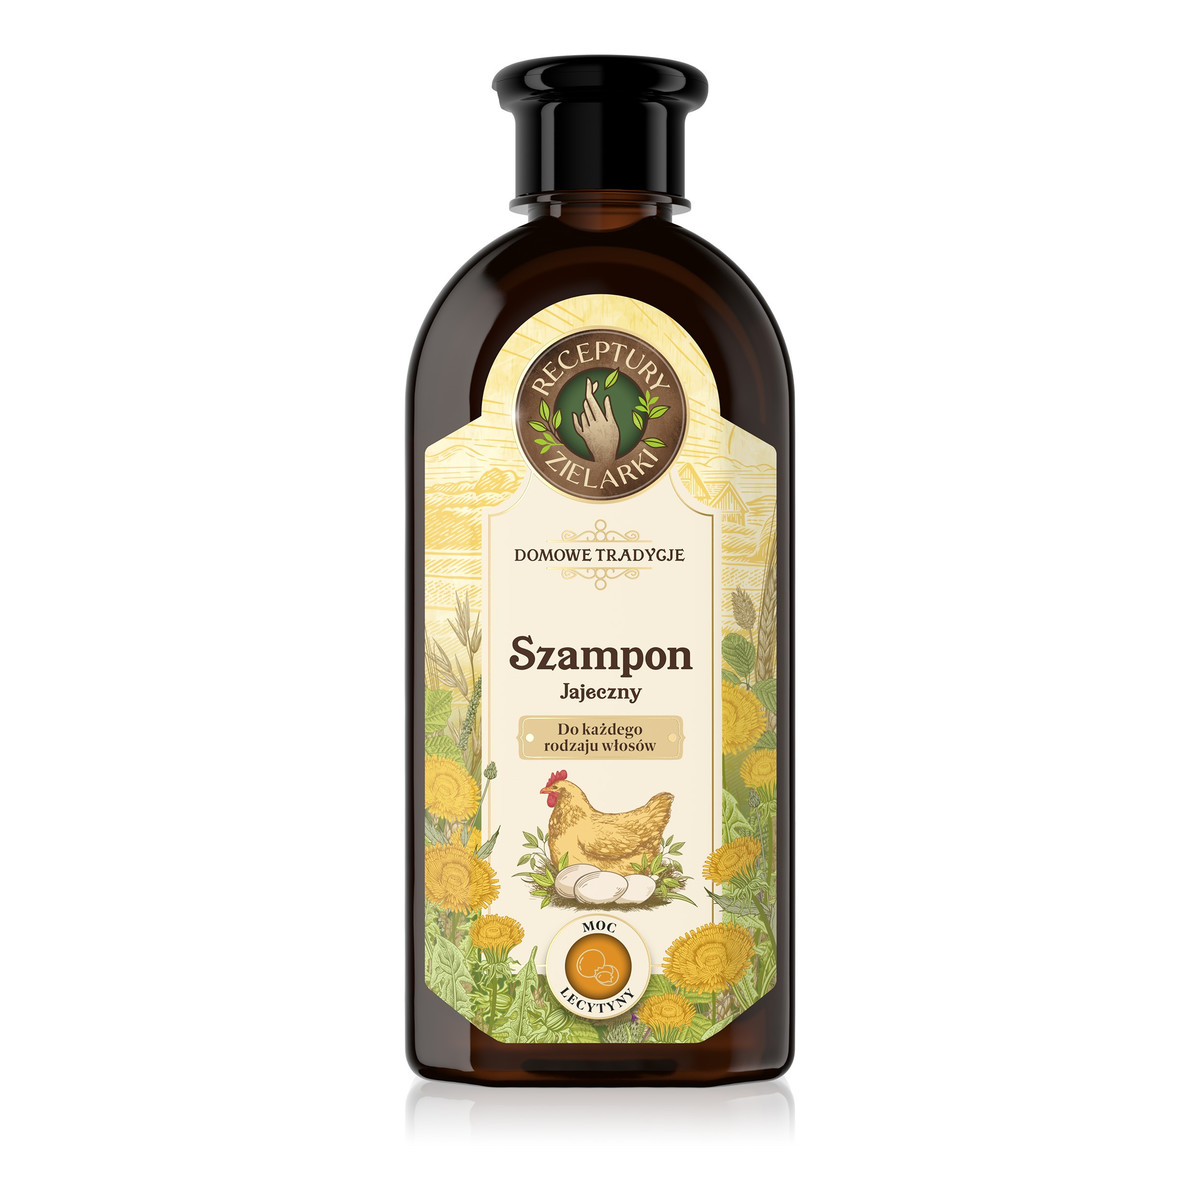 Receptury Zielarki Domowe Tradycje szampon jajeczny do każdego rodzaju włosów 350ml